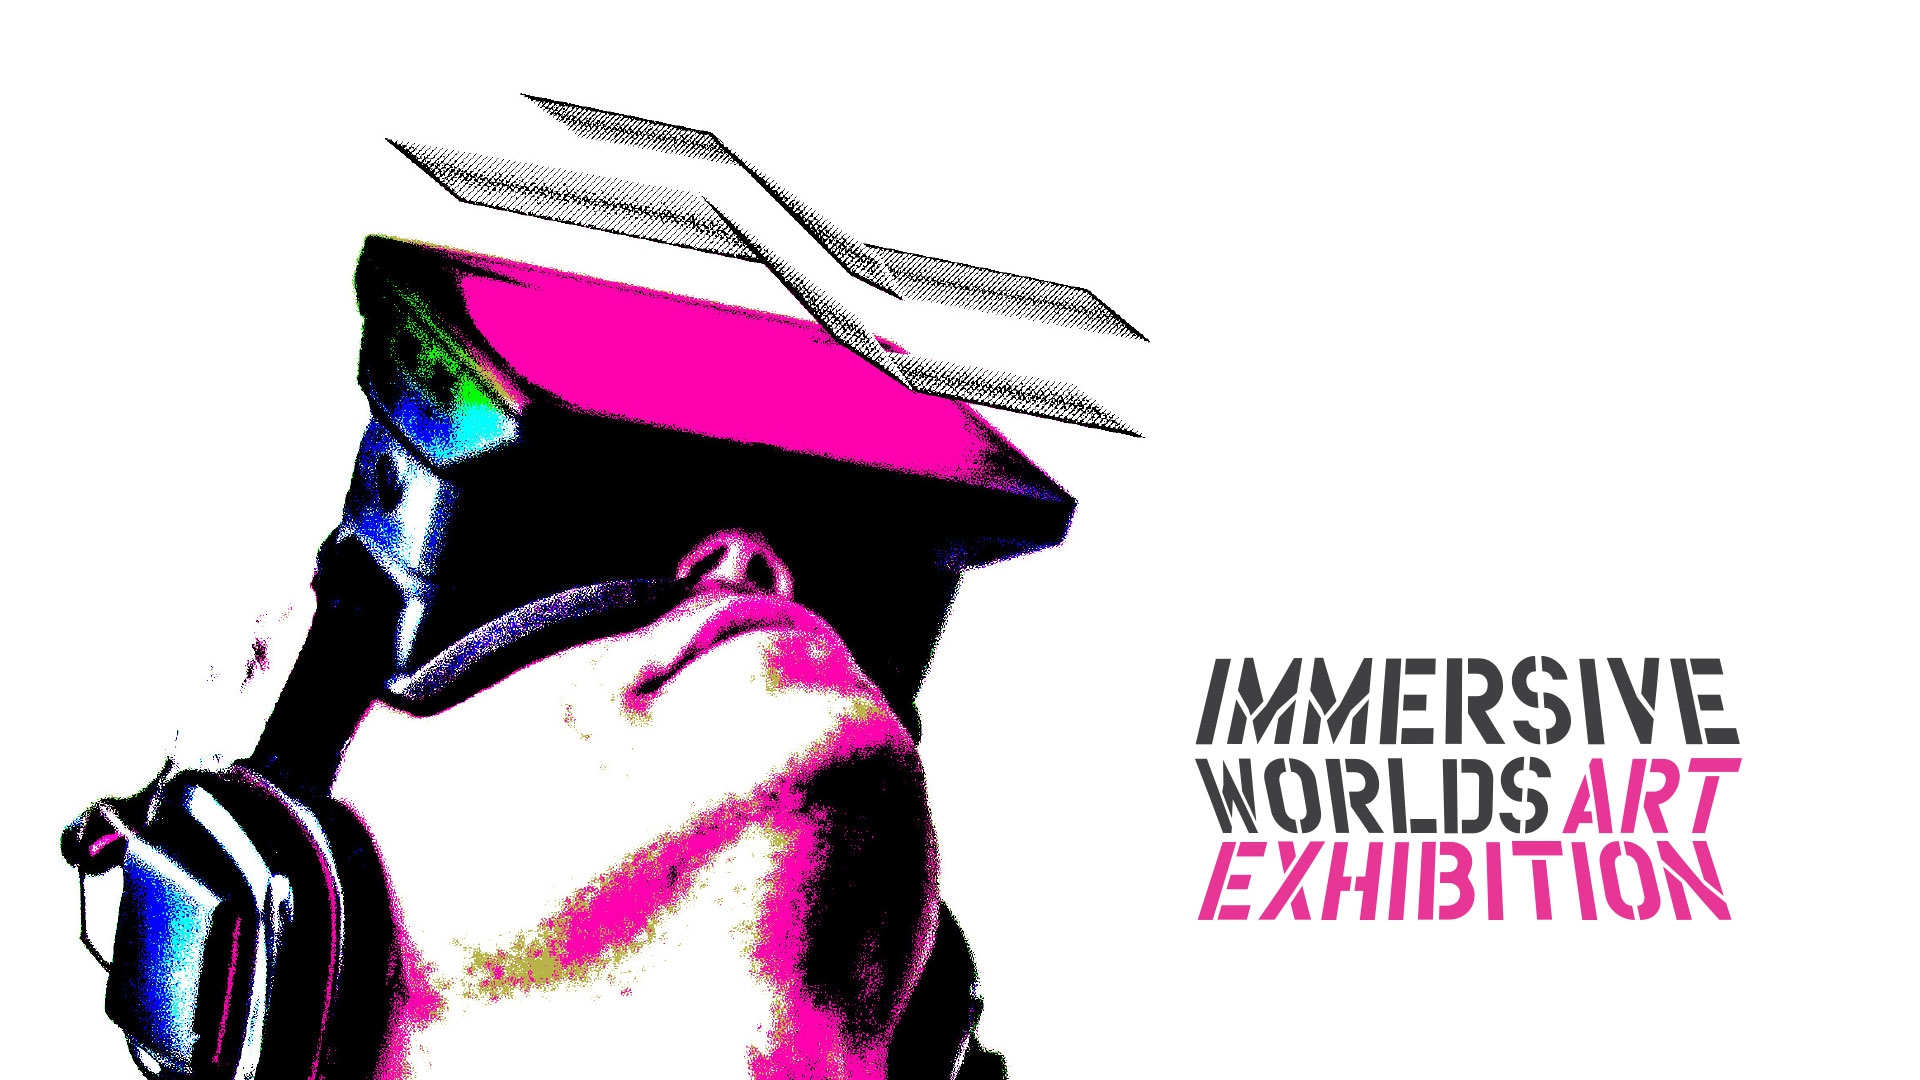 Immersive Worlds Art Exhibition